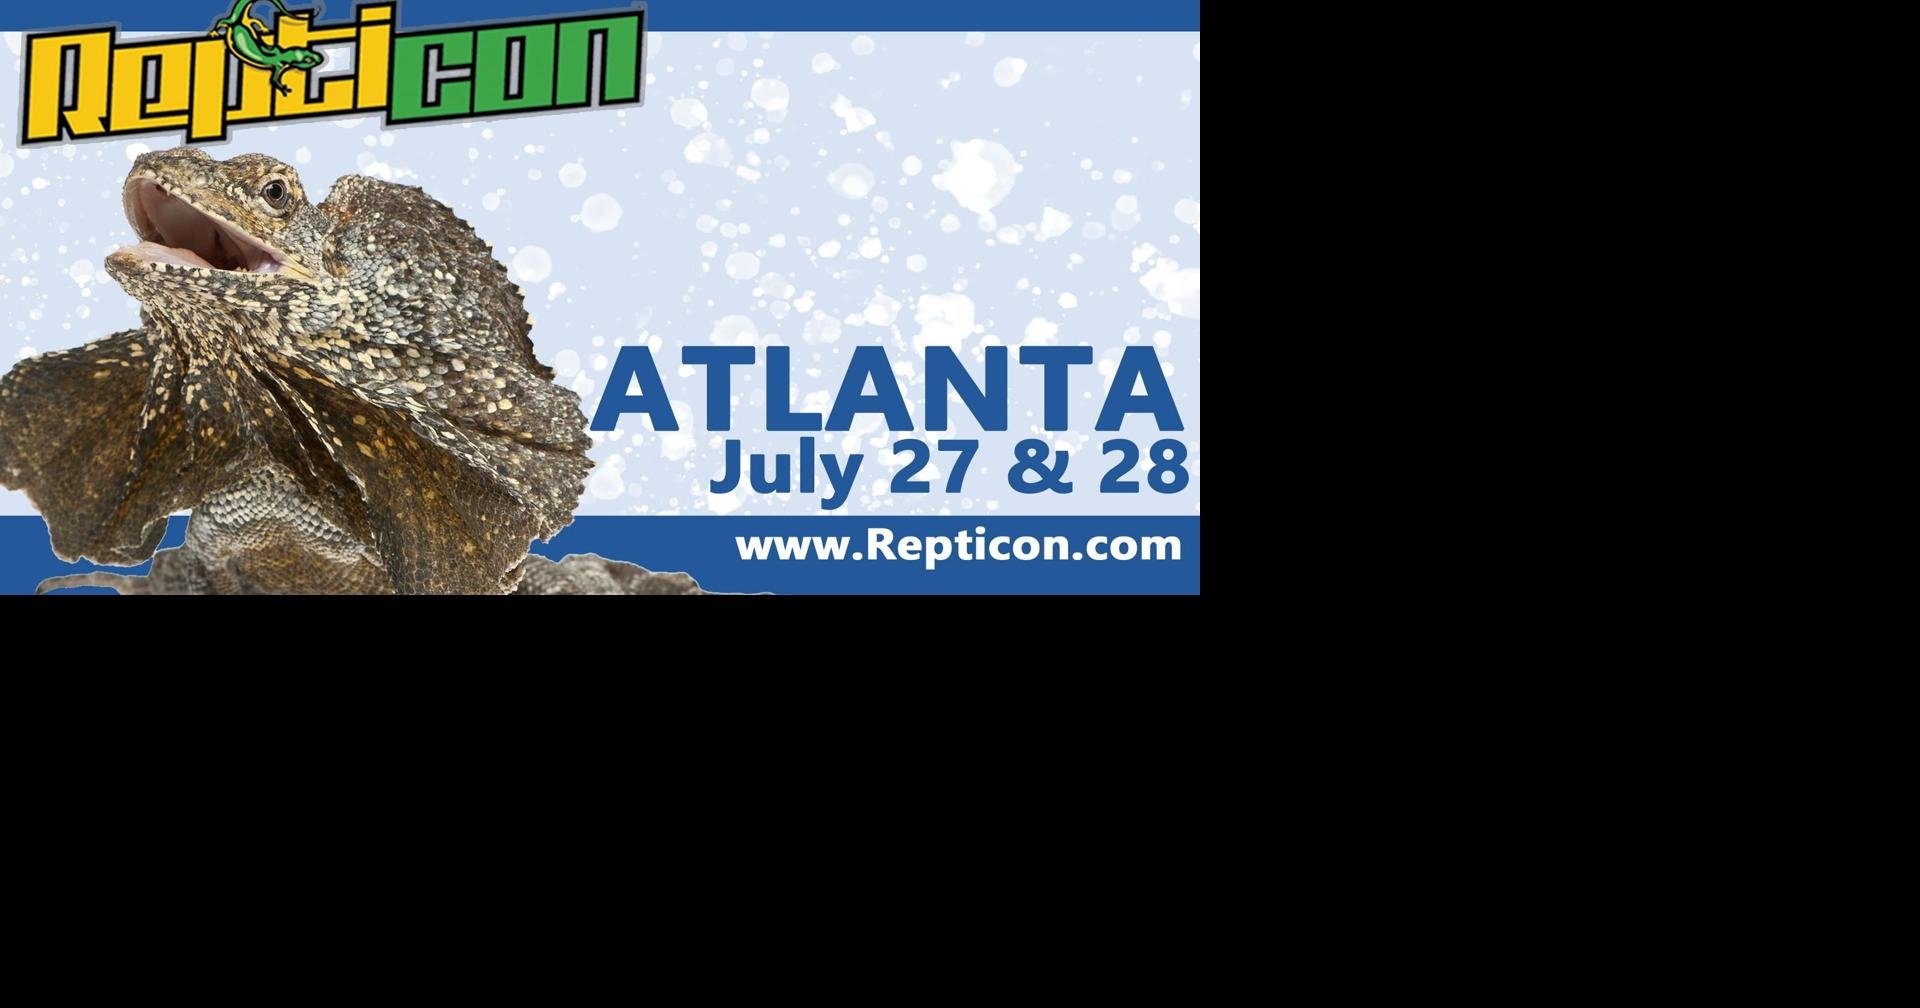 Repticon Atlanta Reptile & Exotic Animal Show